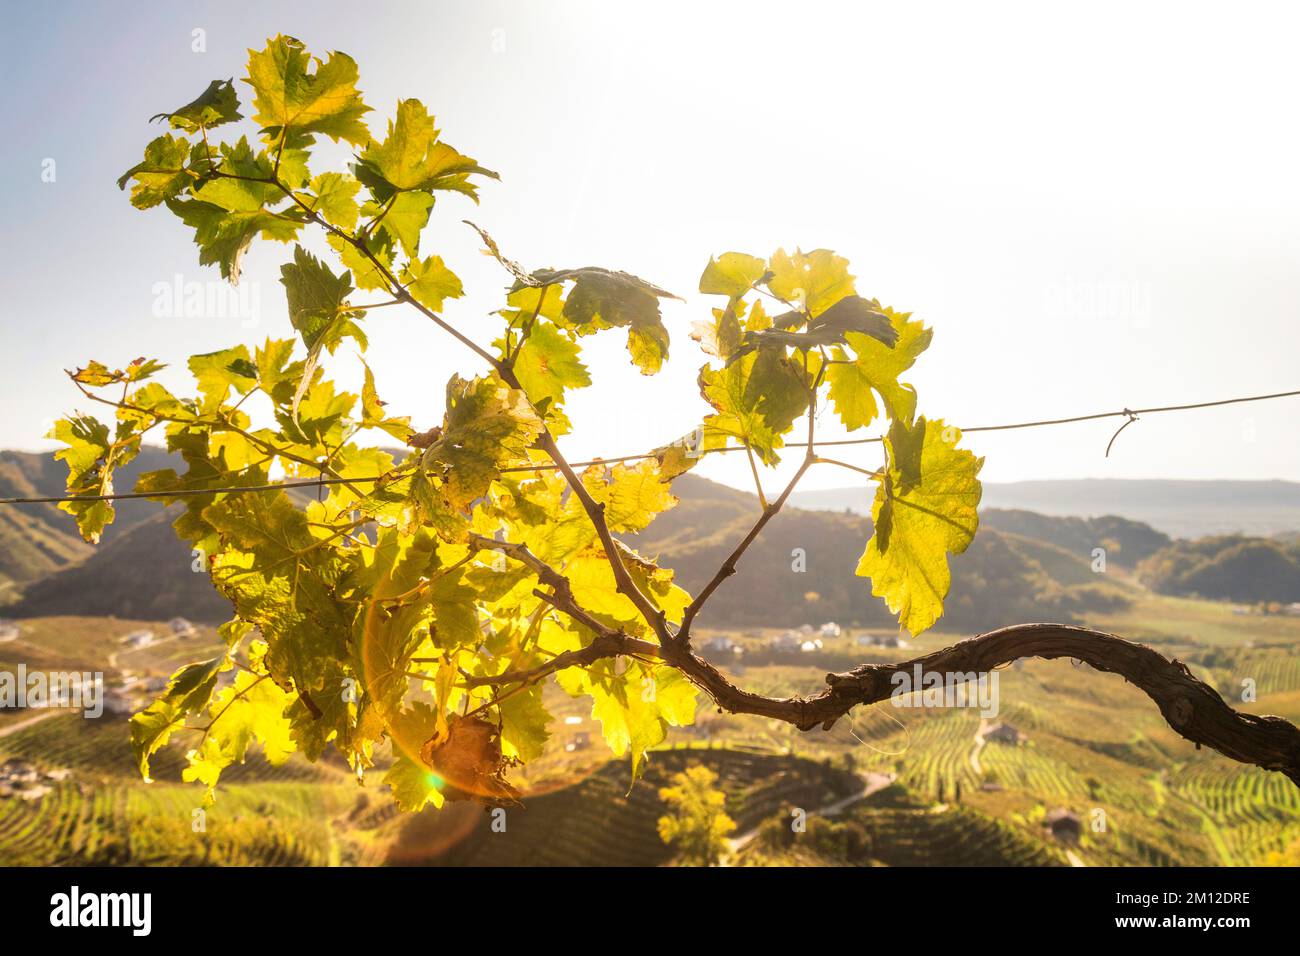 Italia, Veneto, provincia di Treviso, Valdobbiadene. Ramo di vite con foglie gialle in autunno Foto Stock